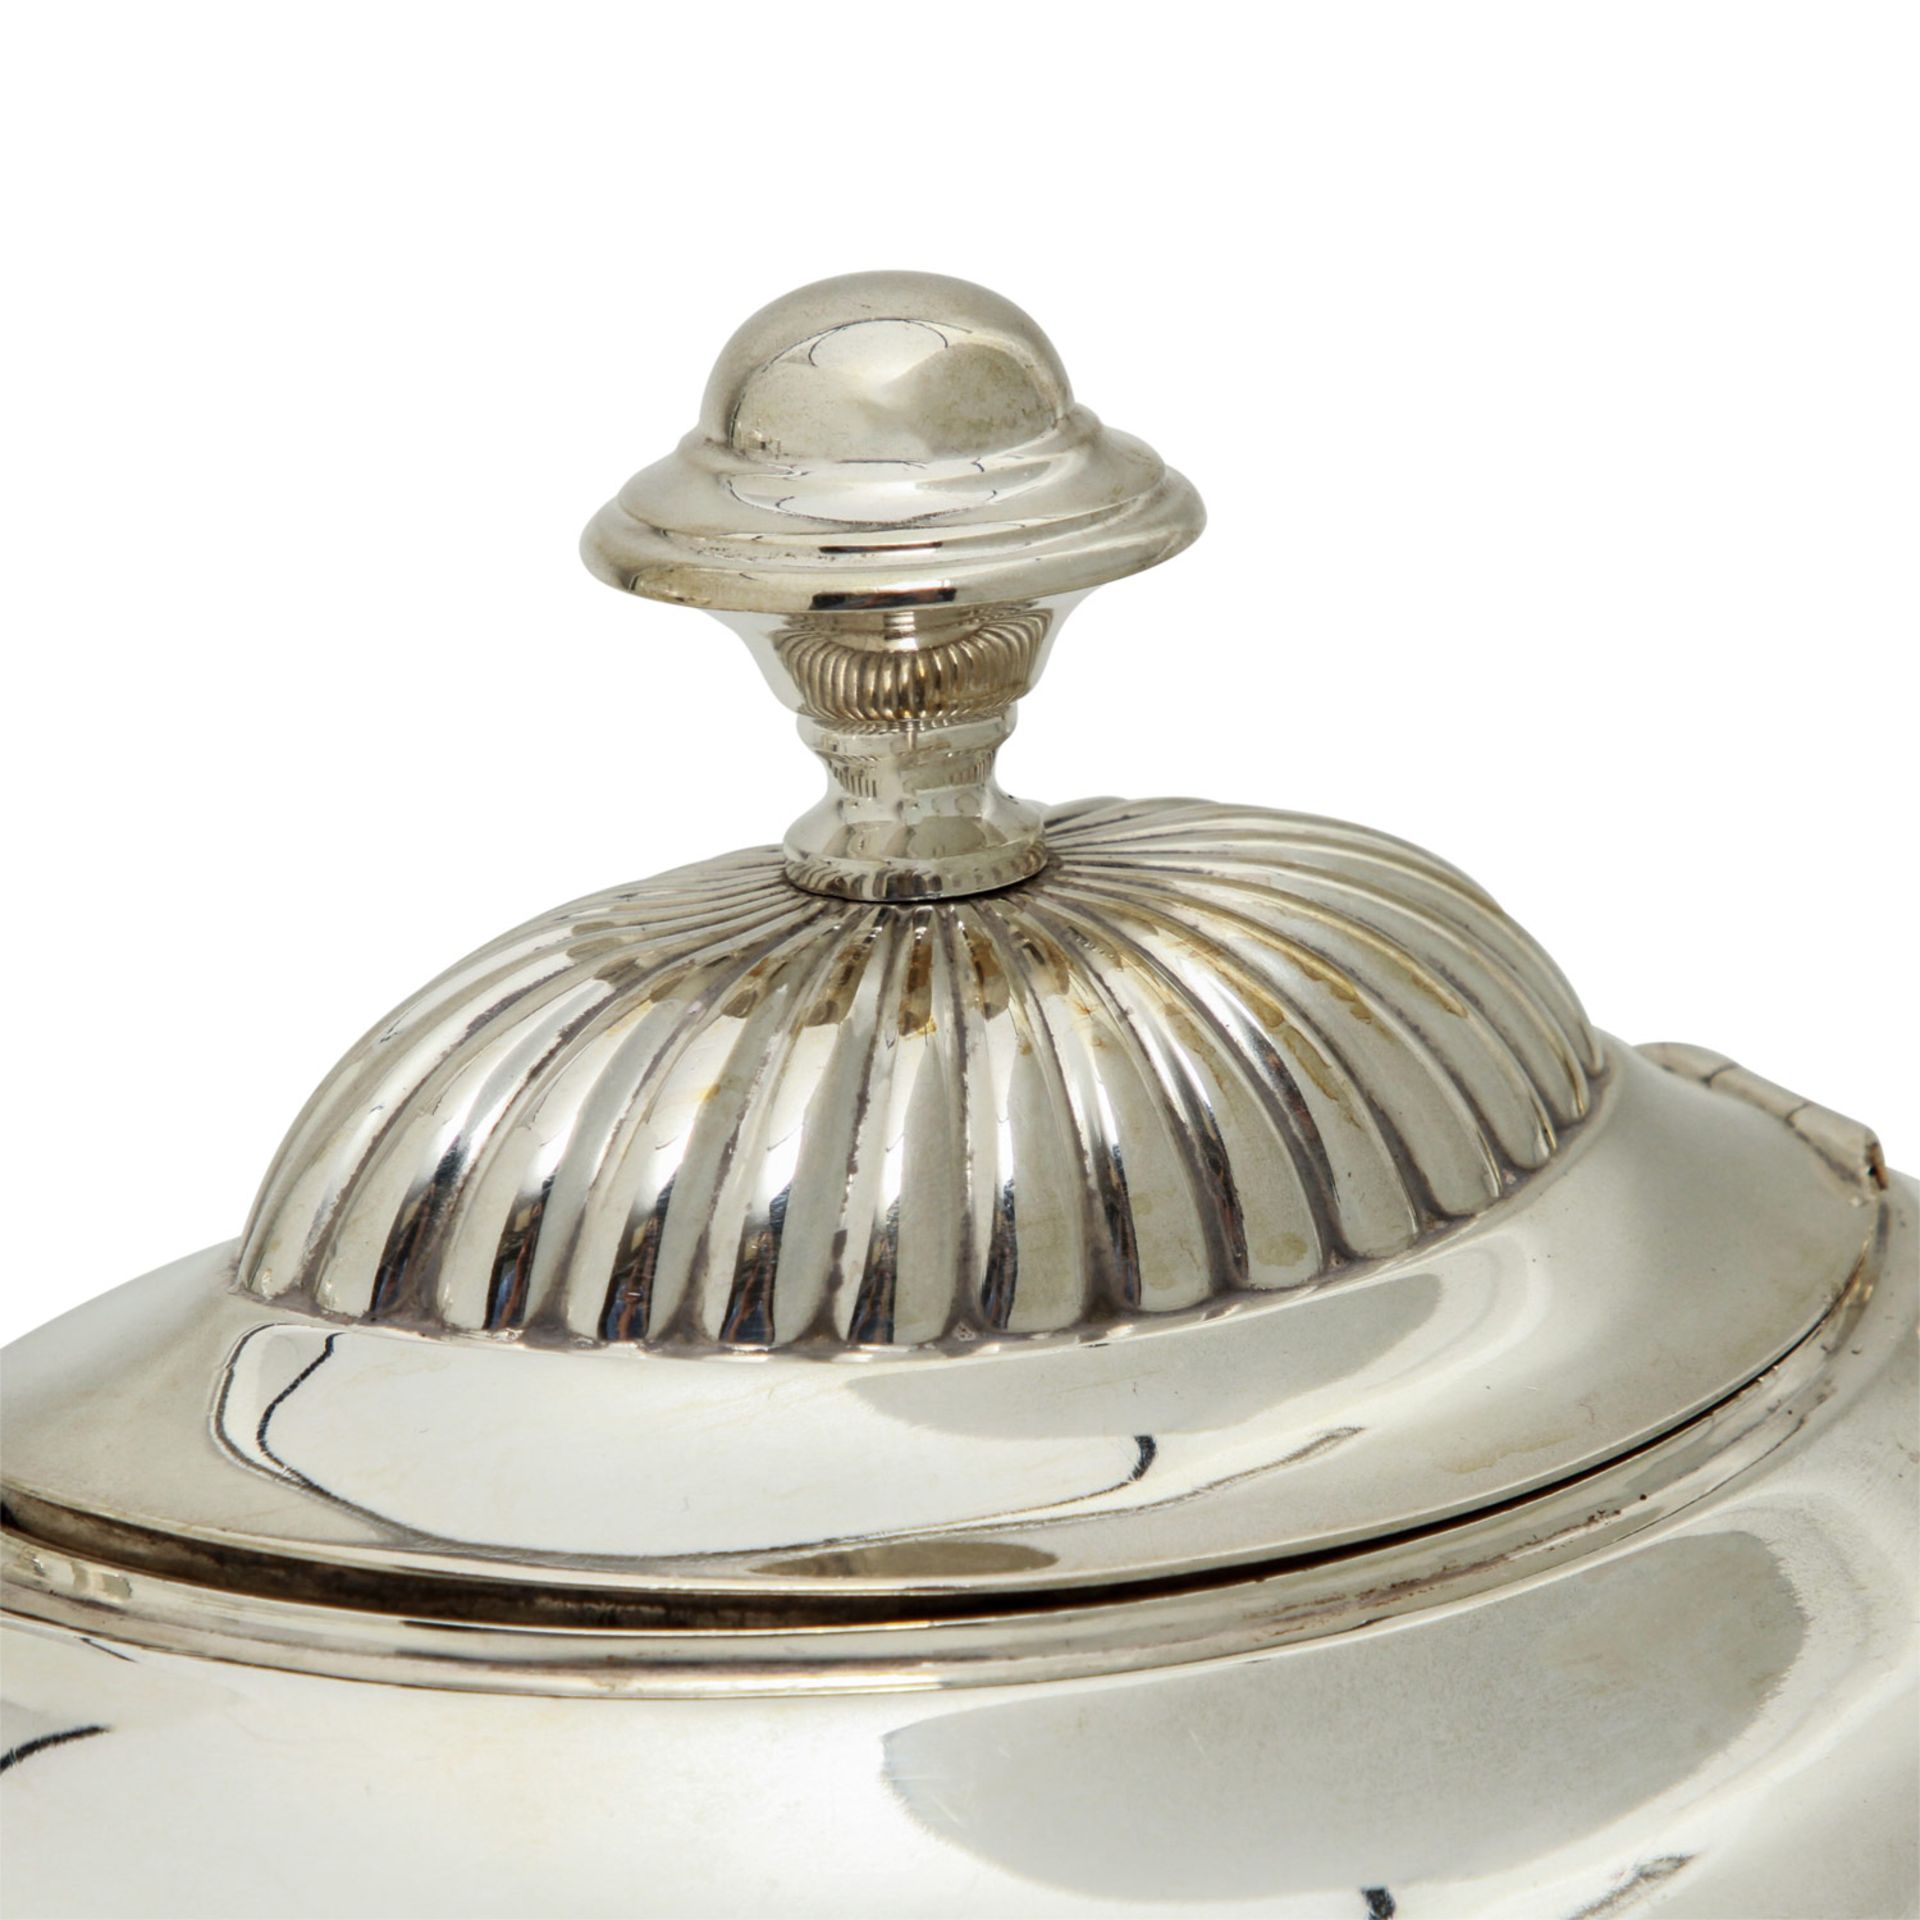 J.M. VAN KEMPEN&ZOON 4-tlg. Kaffee- und Teekern, 833 Silber, 20. Jhd.Ovale Form auf eingezogenem - Bild 4 aus 9